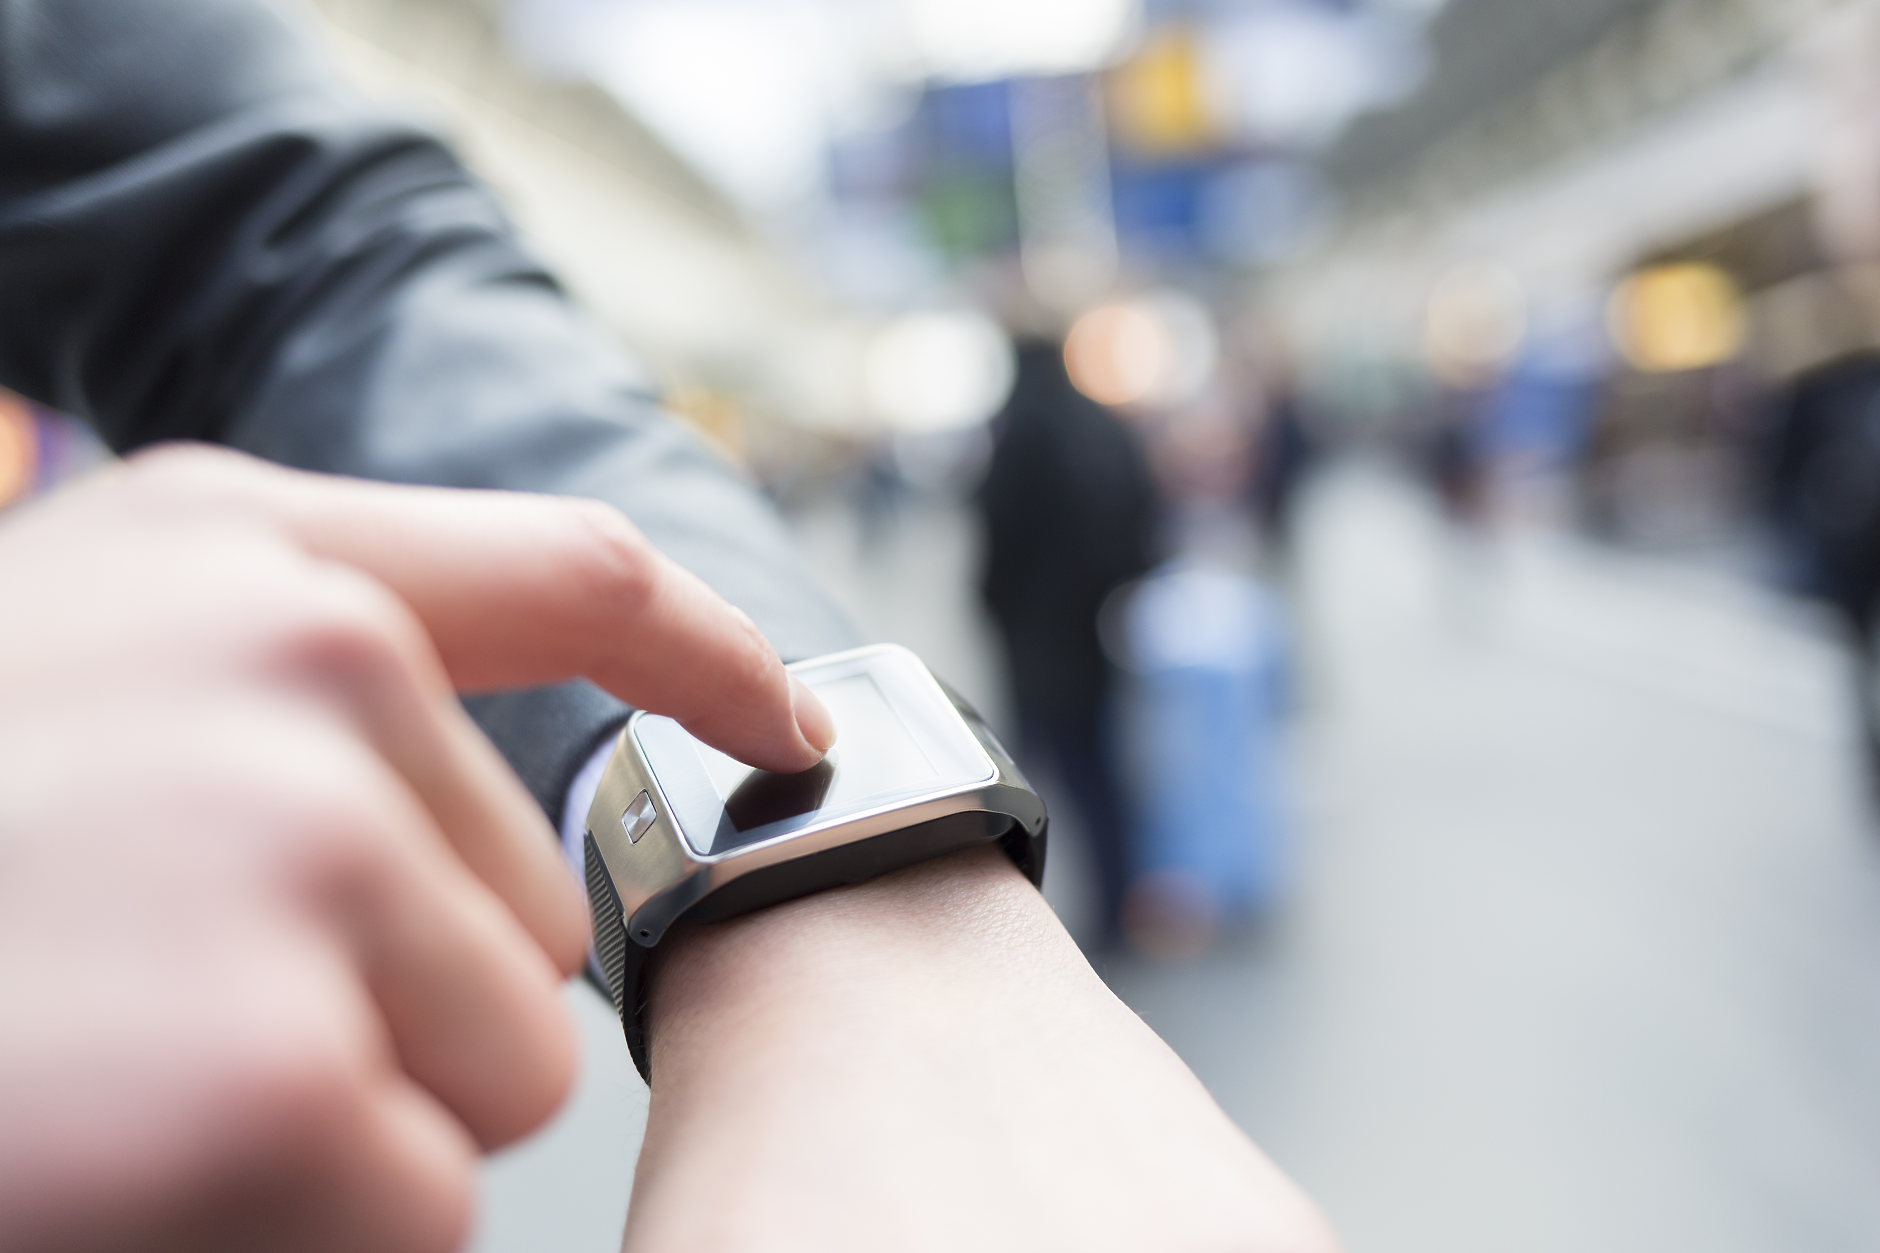 6 съвета как да се грижите добре за своя smartwatch 